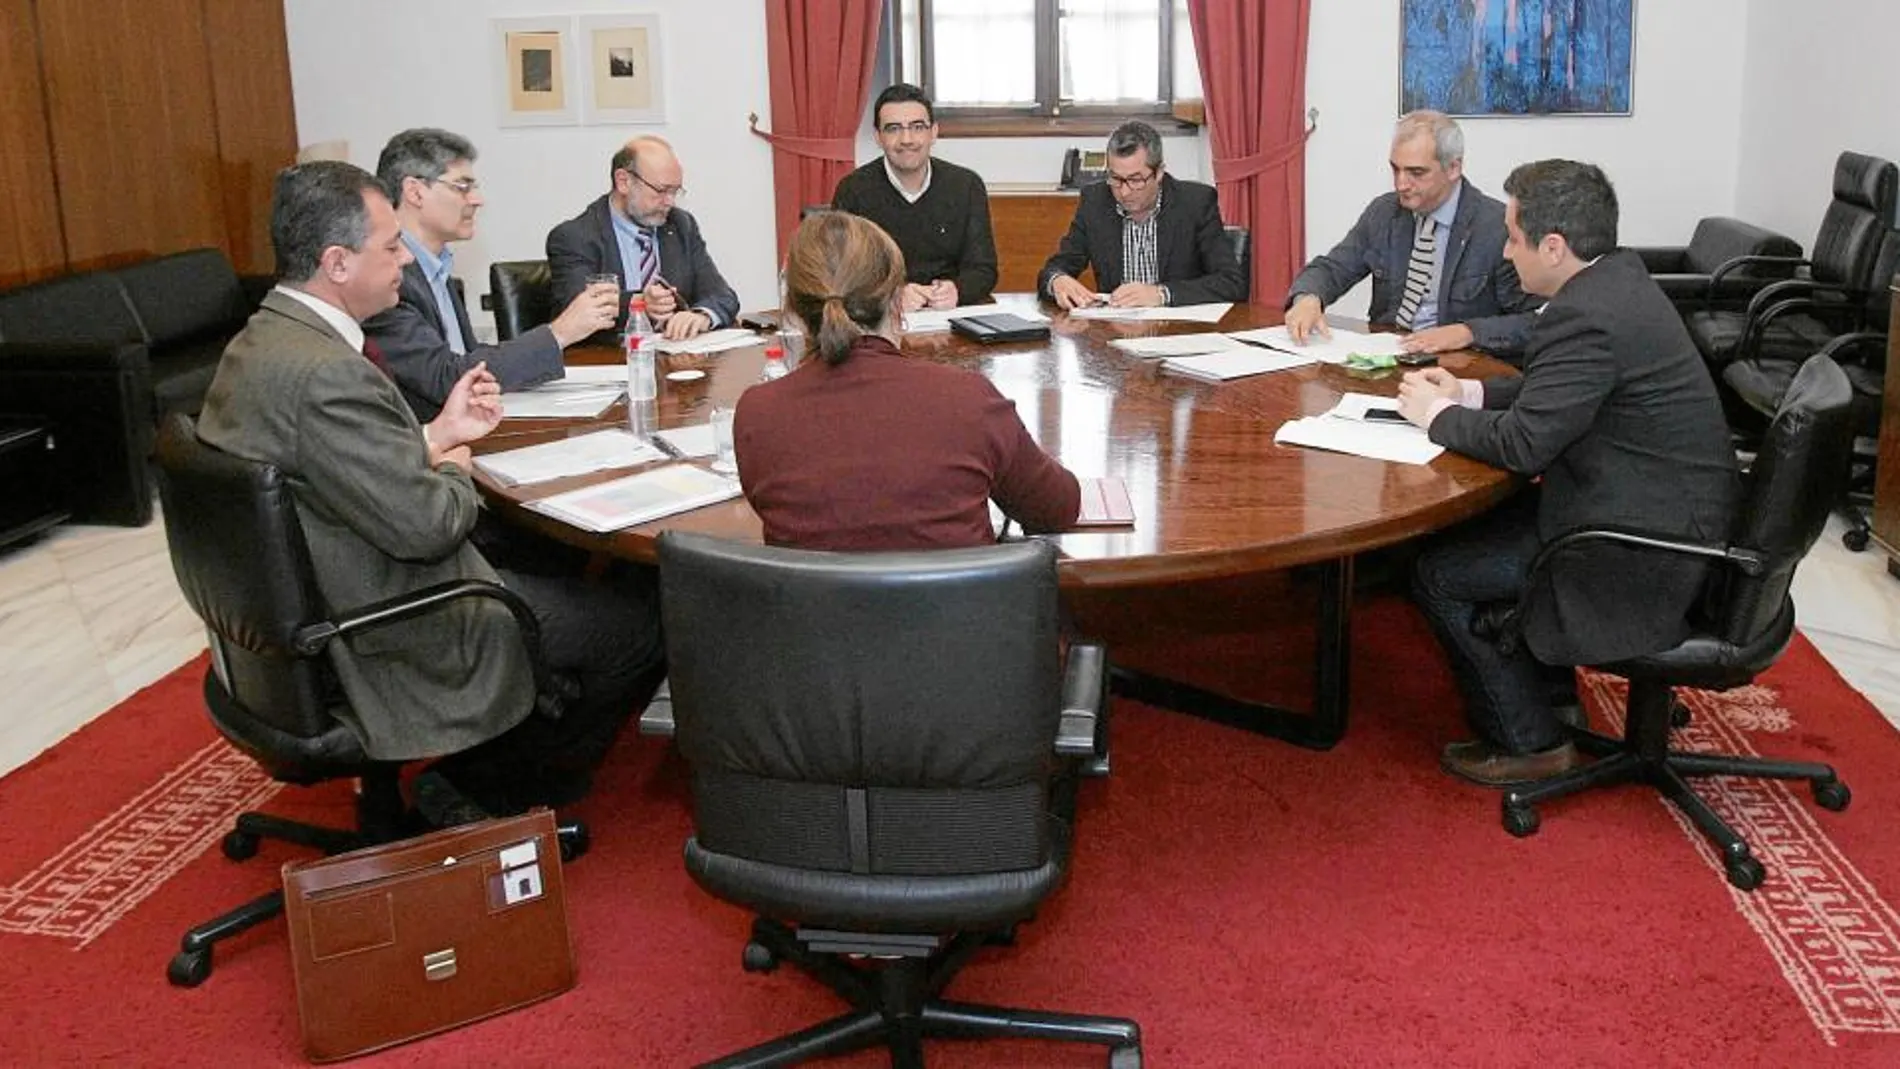 Los representantes de PSOE, PP, IU y PA se reunieron algo menos de una hora